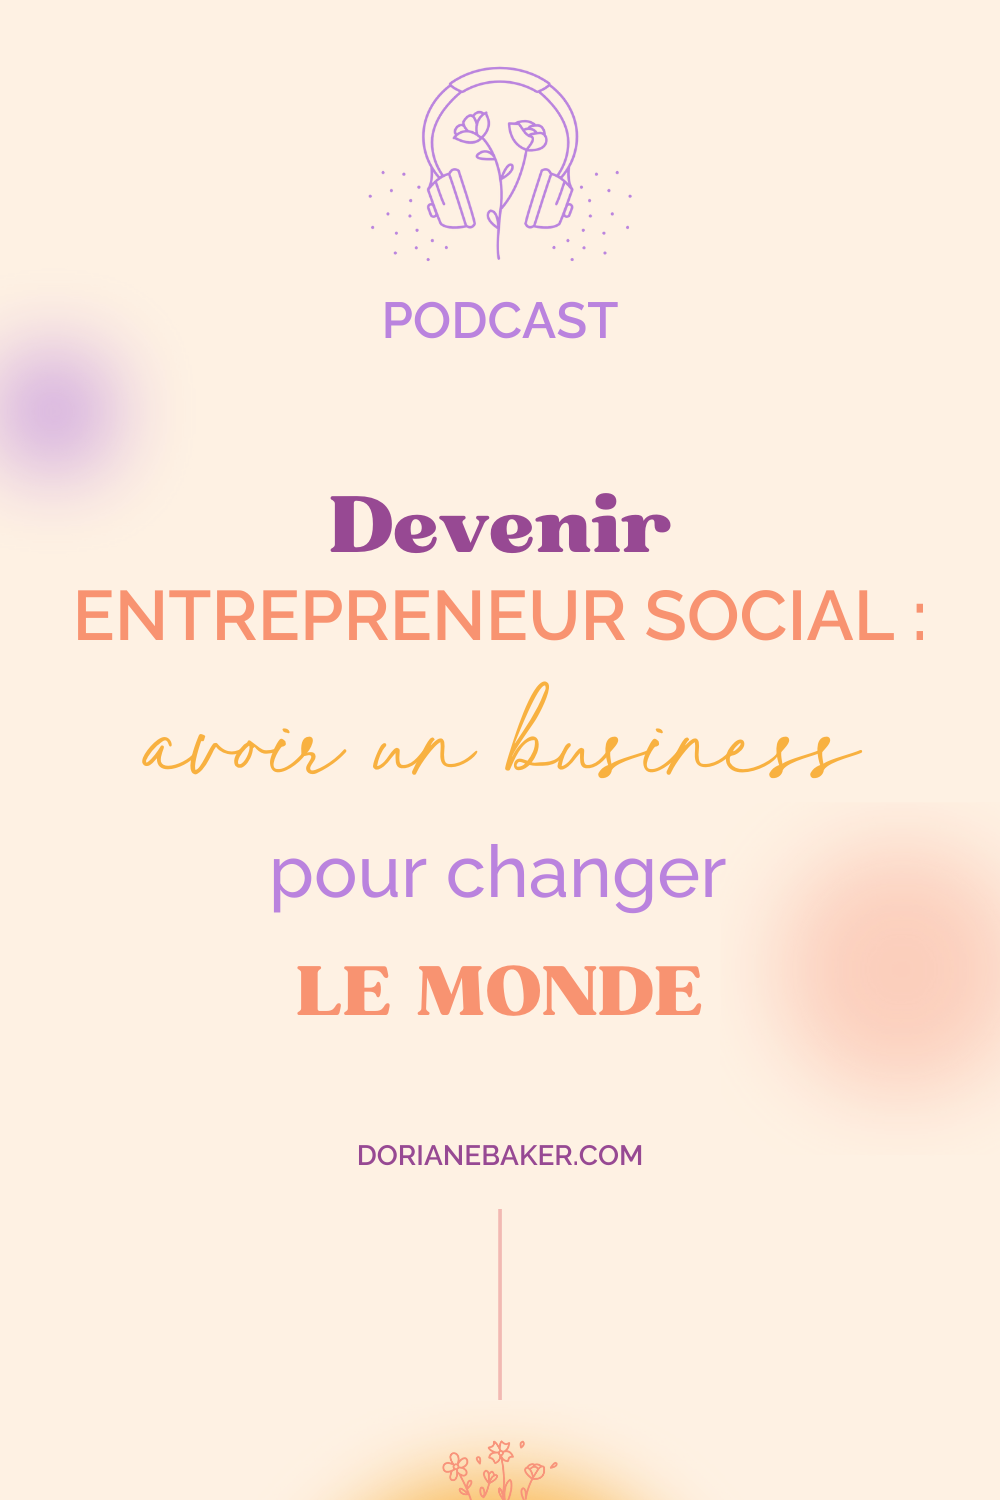 Devenir entrepreneur social : avoir un business pour changer le monde